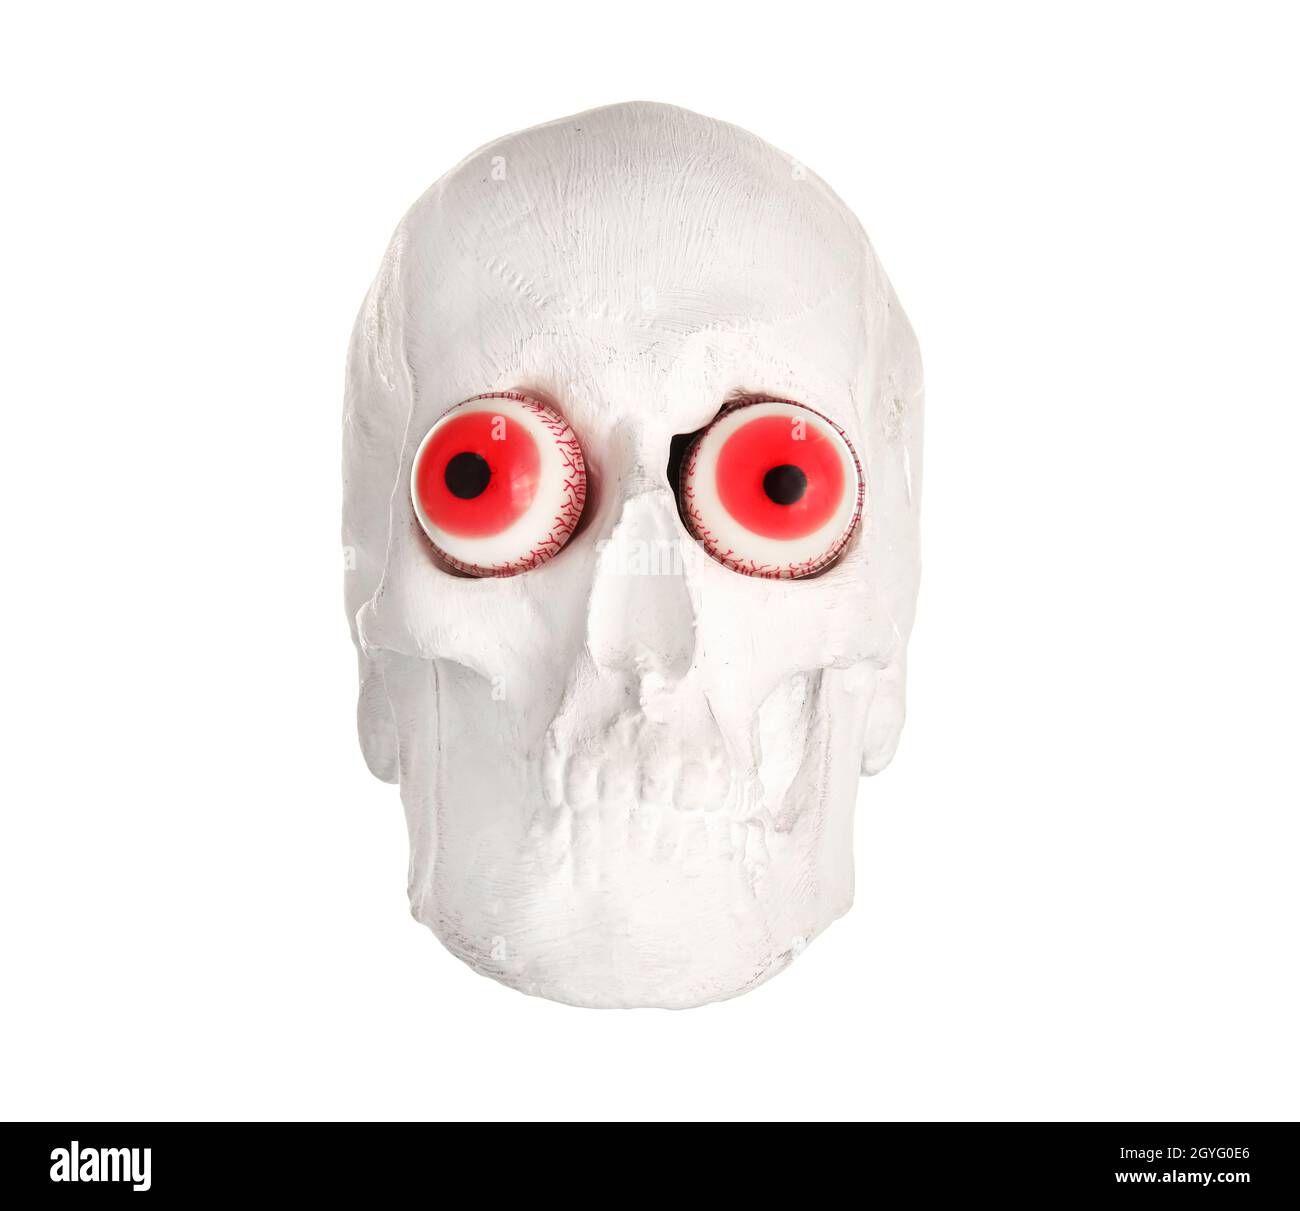 Cranio umano con occhi falsi su sfondo bianco Foto Stock